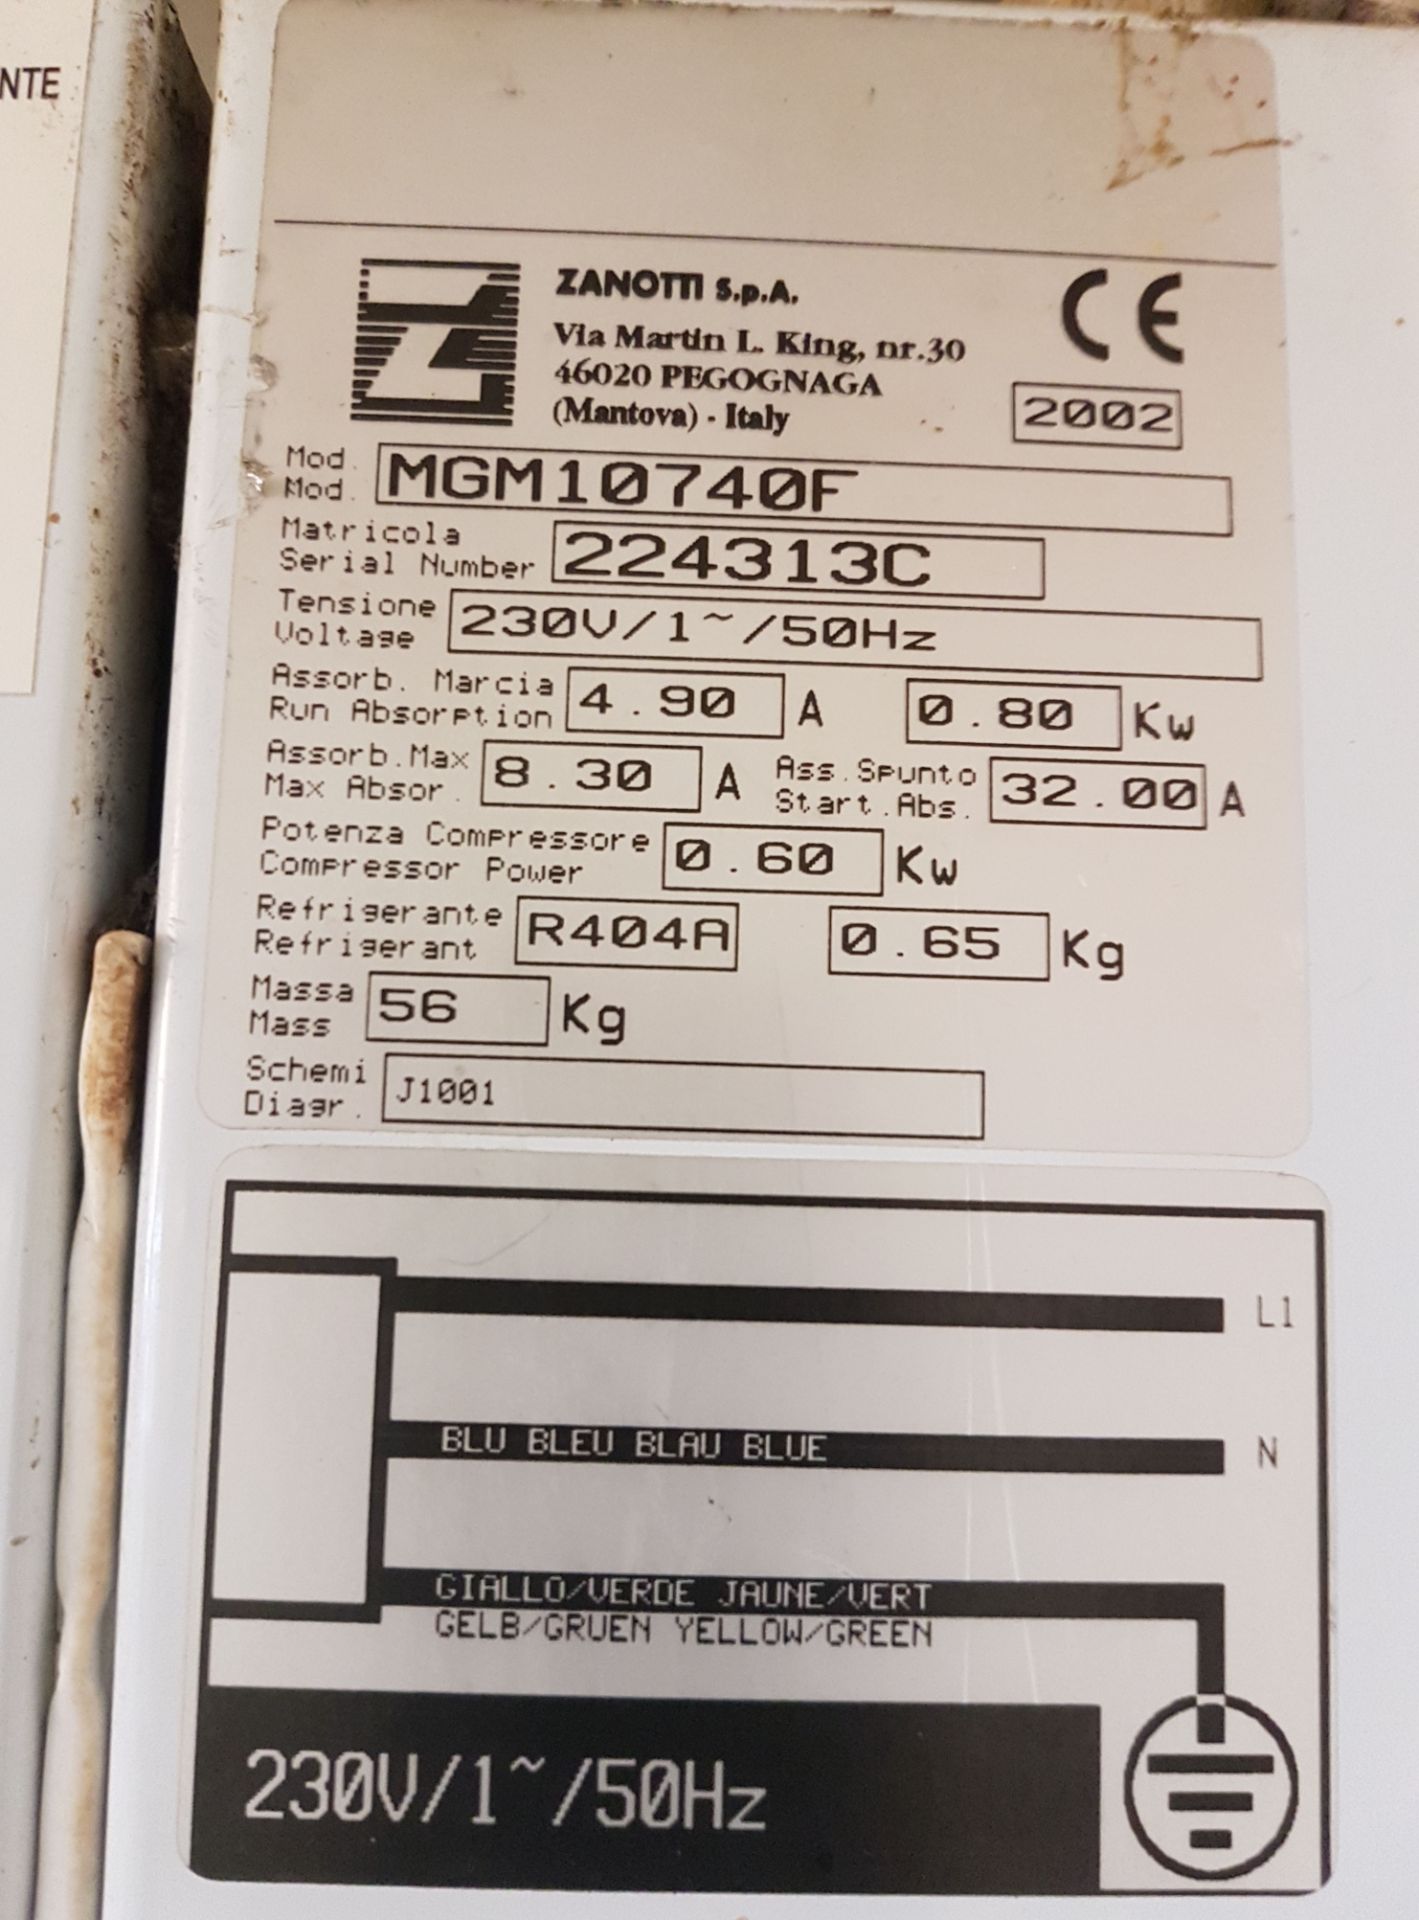 1 x Zanotti GM1 Walk-in Freezer (Model: mgm10740f) - Dimensions: W255 x D151 x H230cm - Ref: - Image 6 of 8